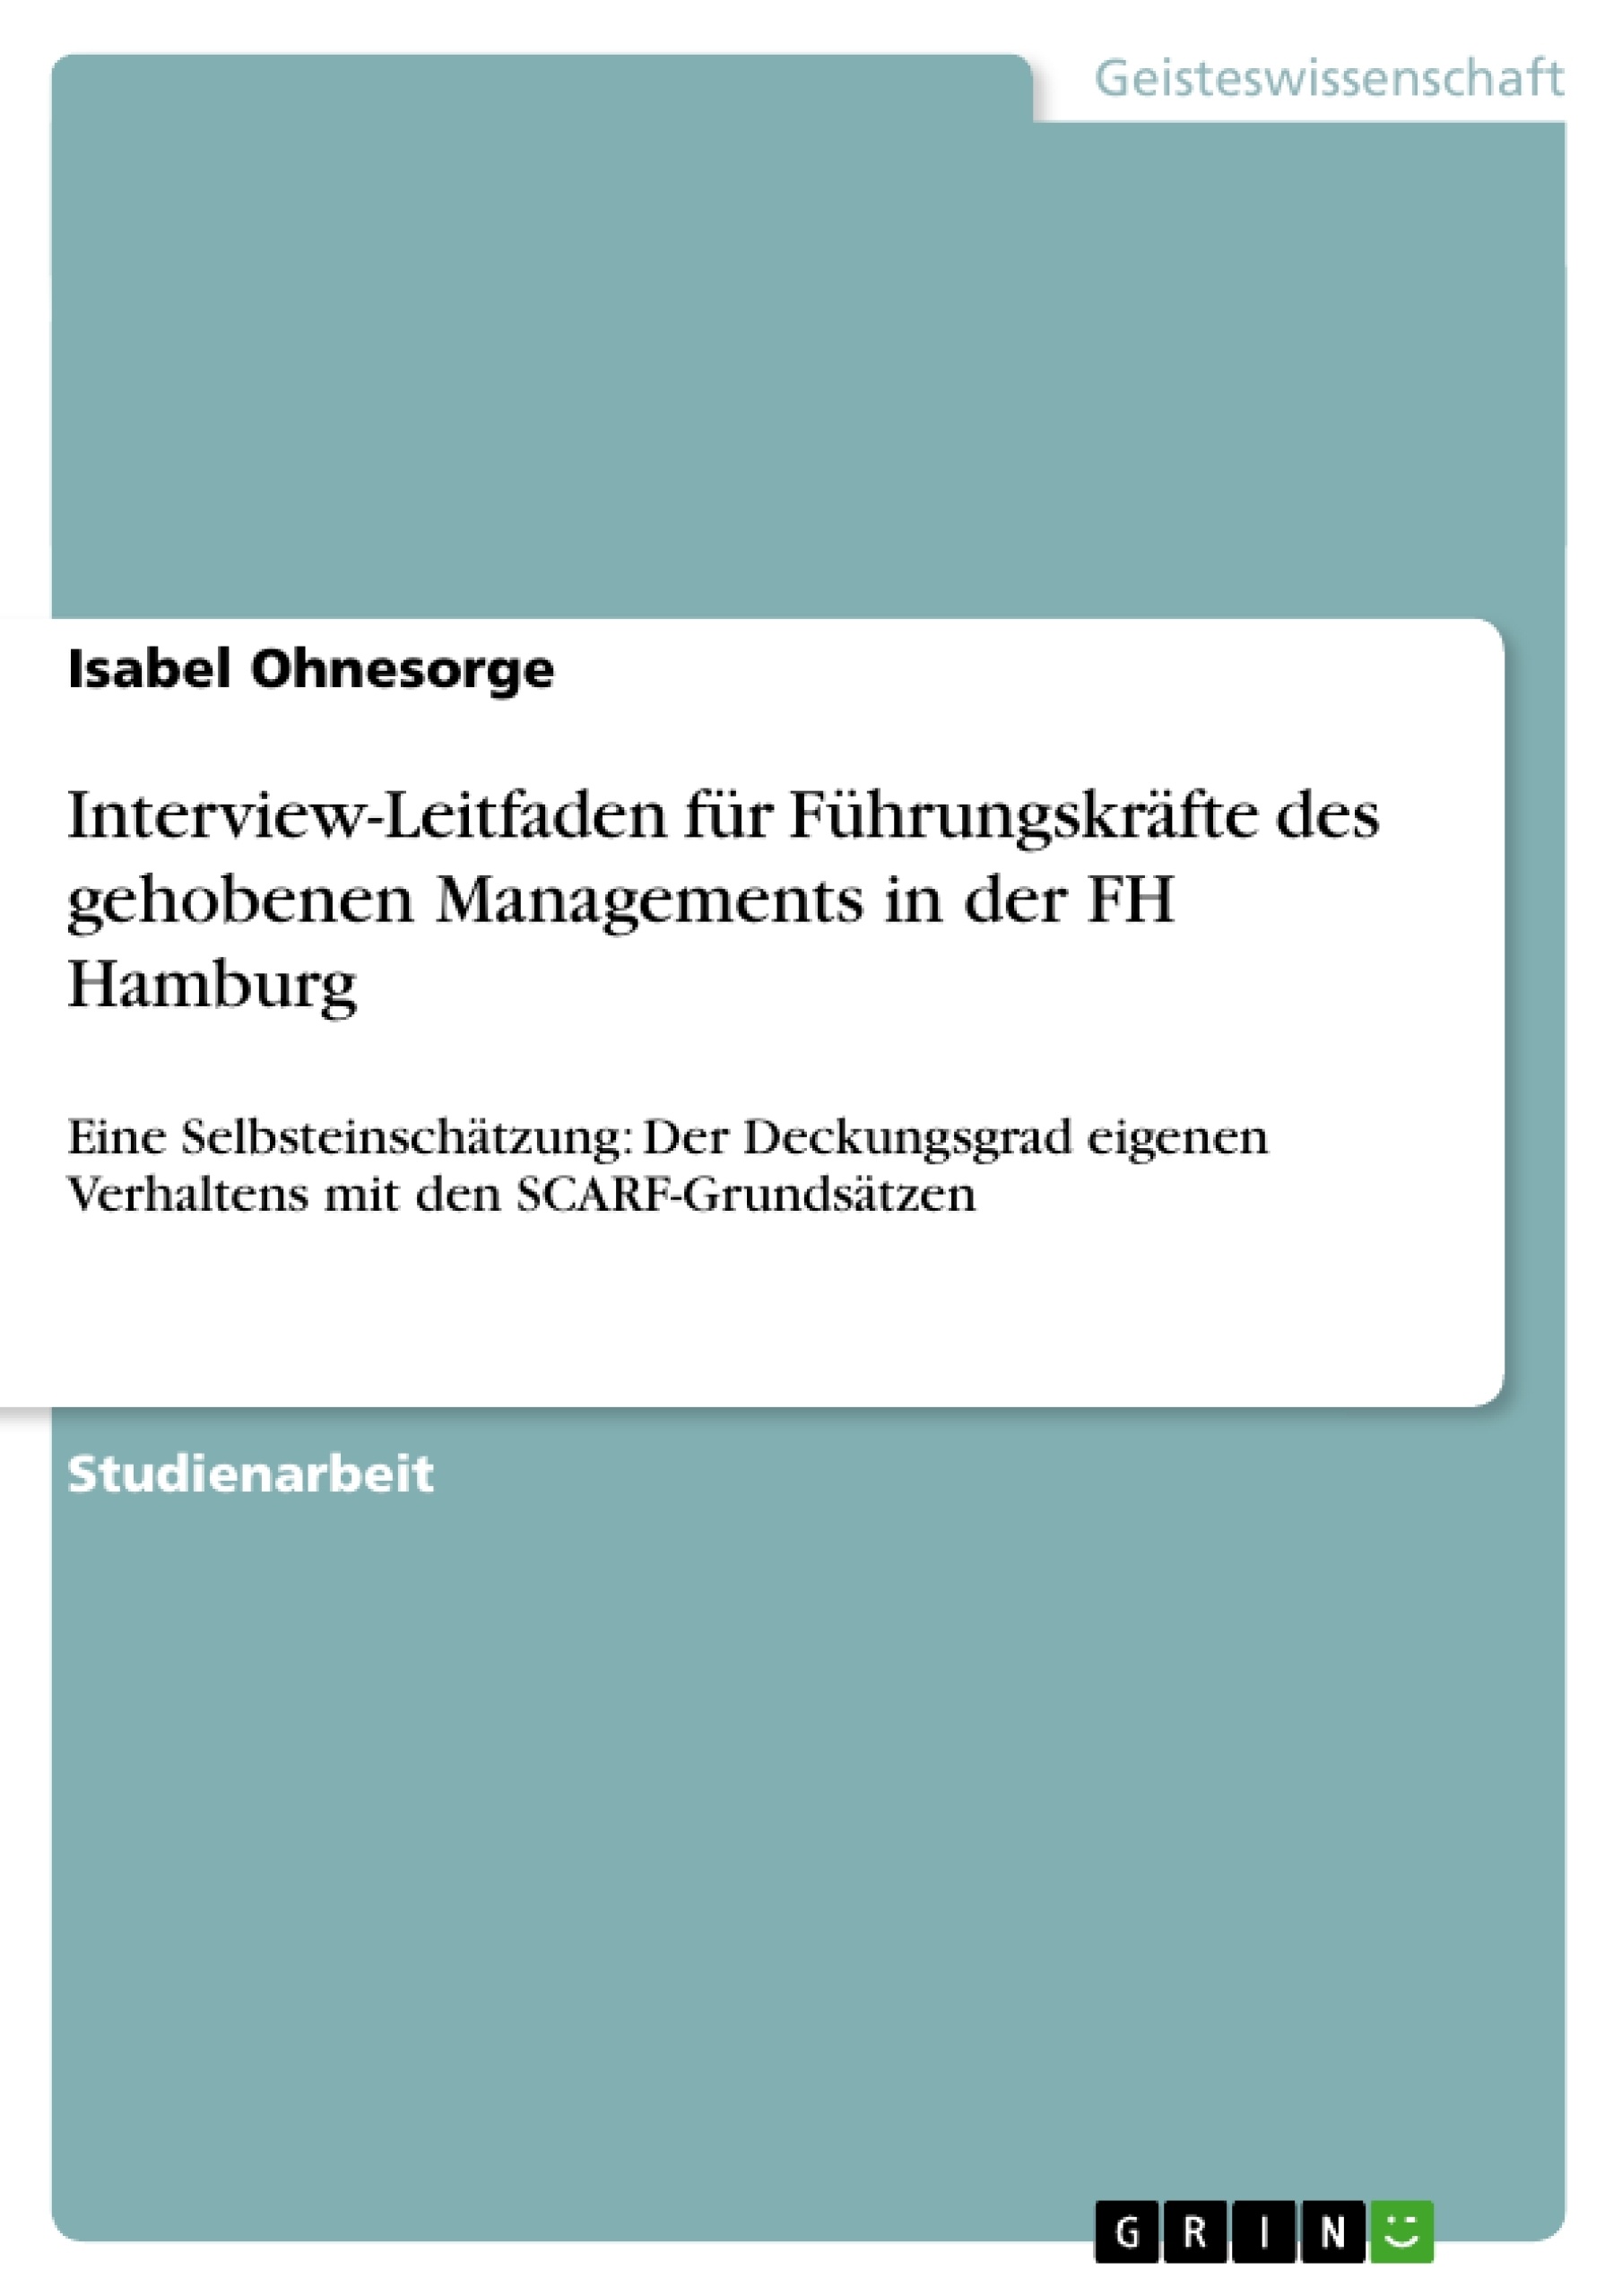 Title: Interview-Leitfaden für Führungskräfte des gehobenen Managements in der FH Hamburg